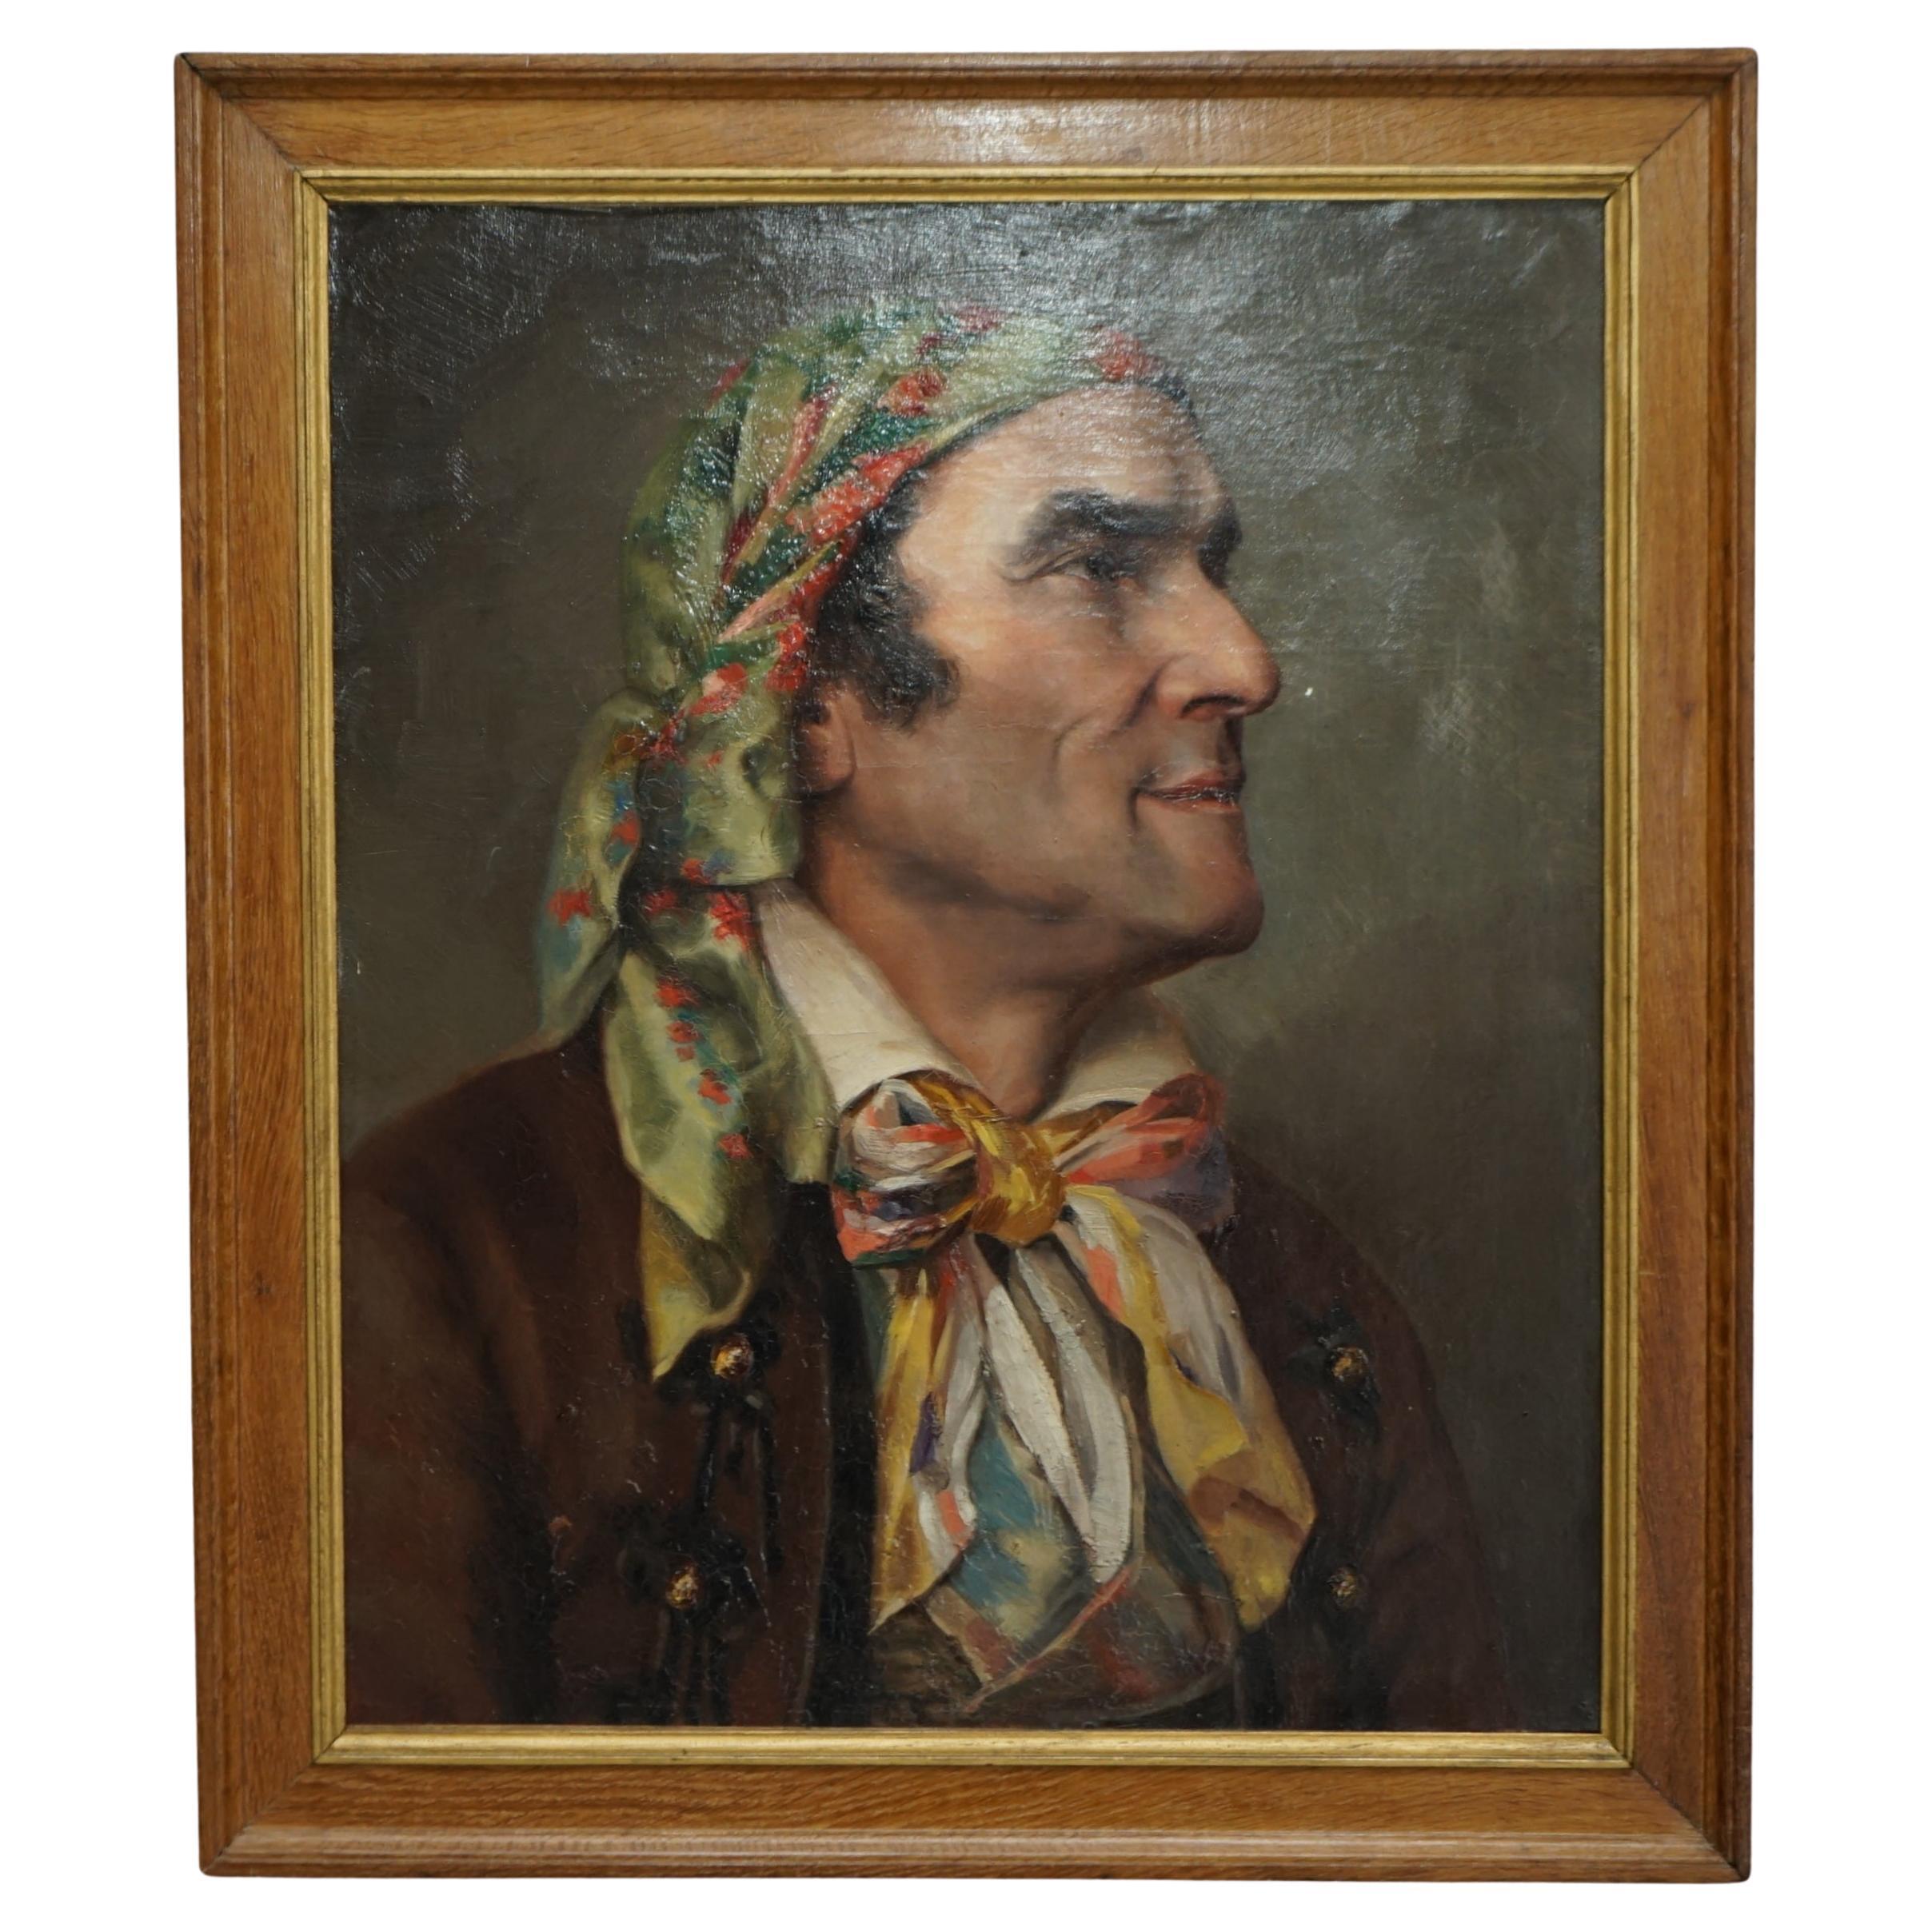 Antiquité, vers 1860, peinture à l'huile française de Napoléon III représentant un gentilhomme coiffé d'un foulard